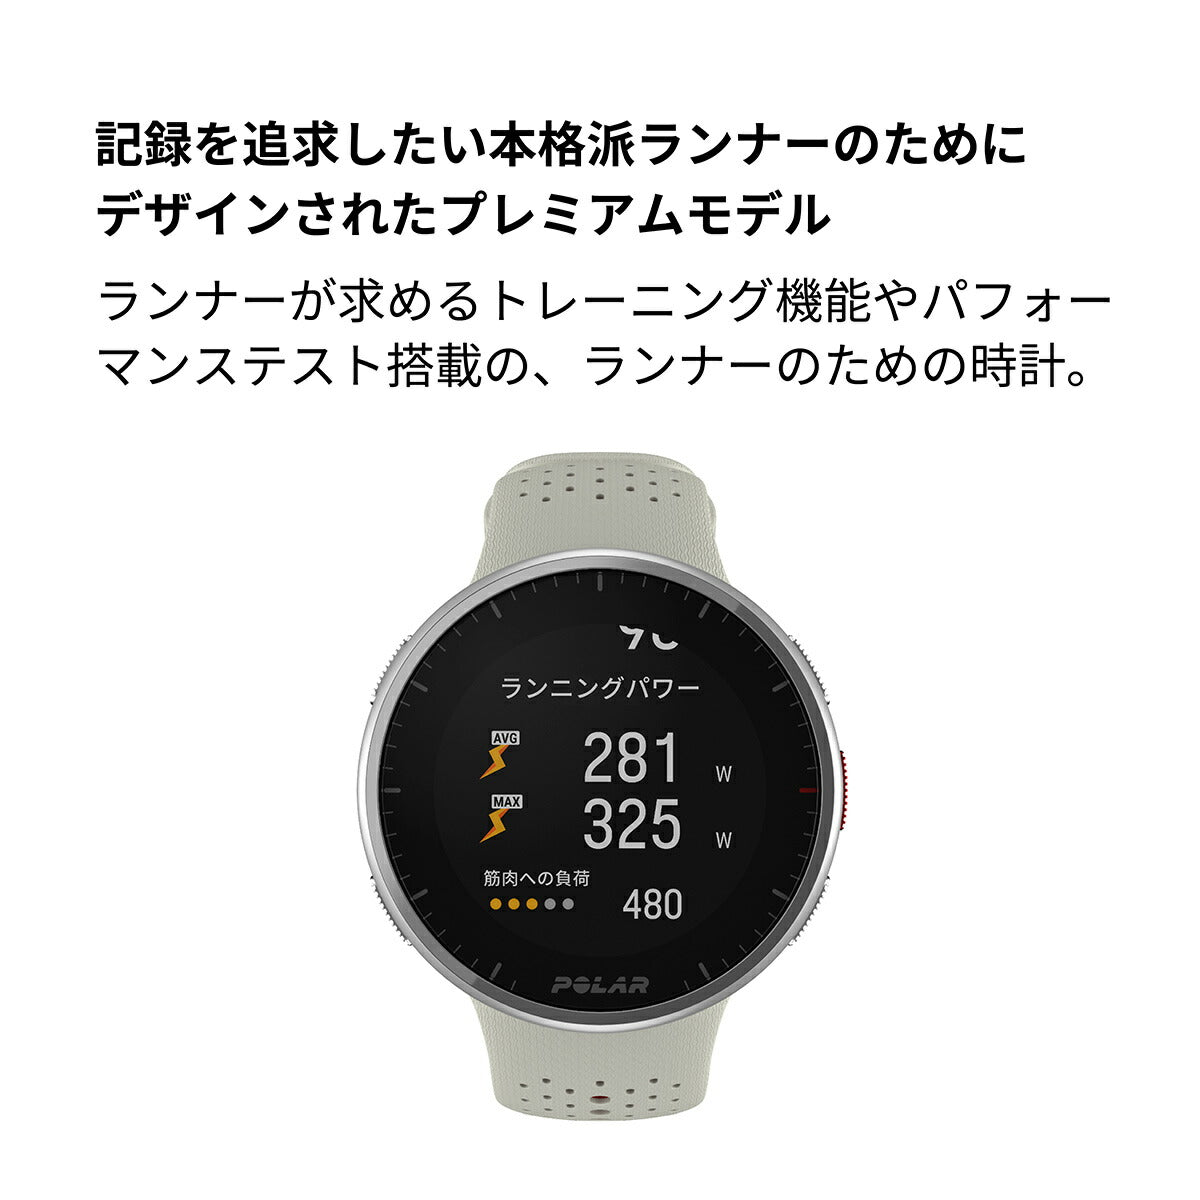 ポラール POLAR PACER PRO スマートウォッチ GPS 心拍 トレーニング ランニング マラソン 腕時計 ぺーサープロ ホワイトレッド S-L 900102180 日本正規品